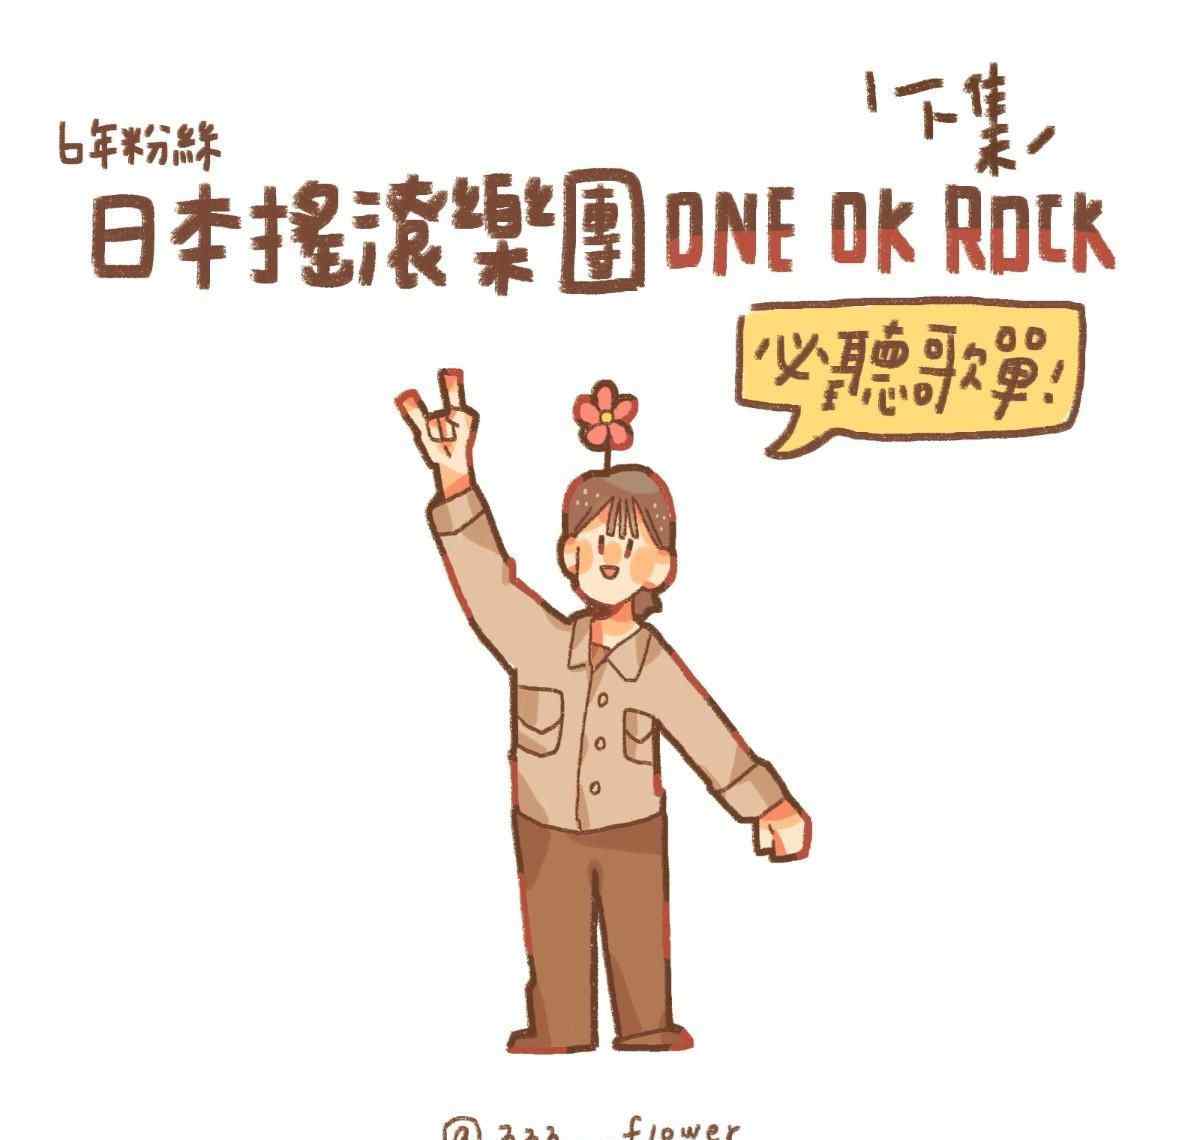 日本摇滚乐团ONE OK ROCK 出道至今必听歌曲推荐！！?